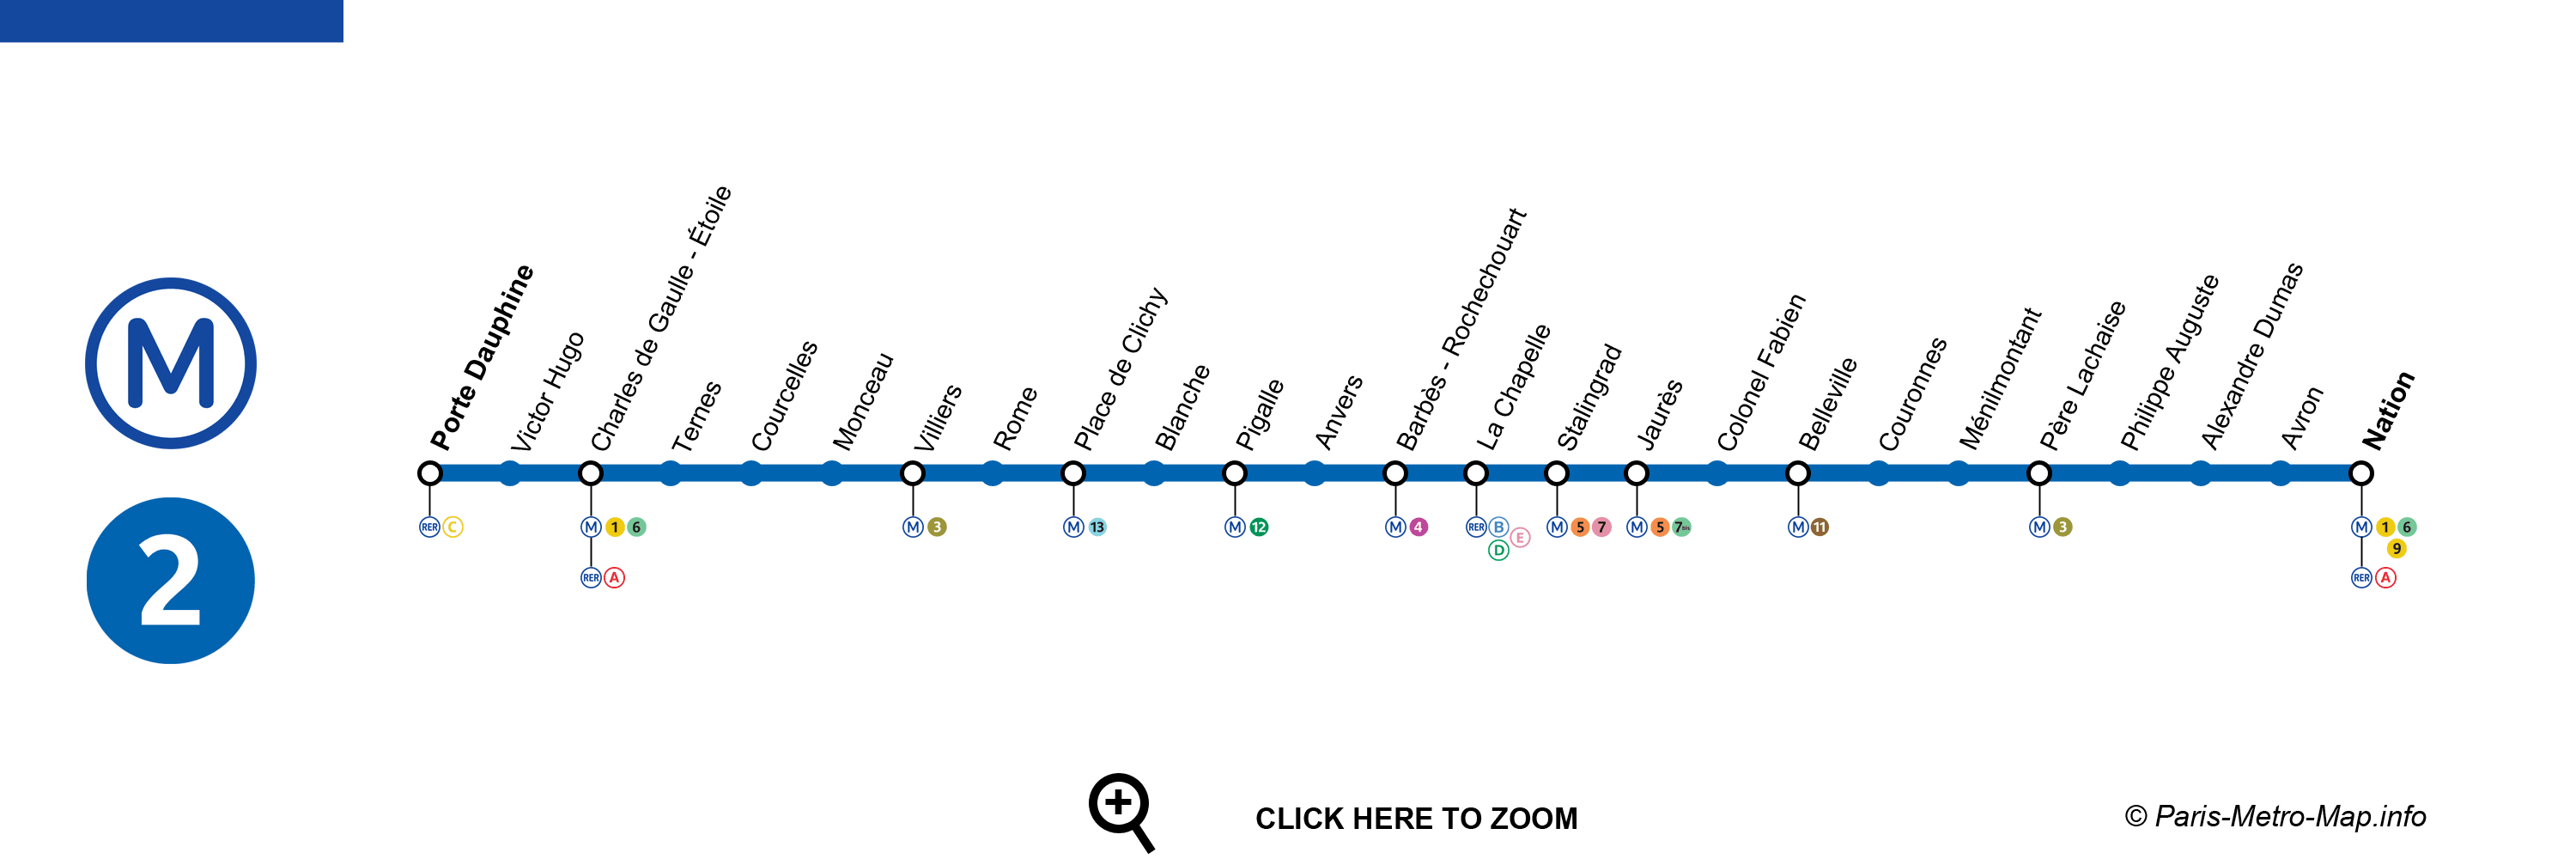 metro ligne 2 paris